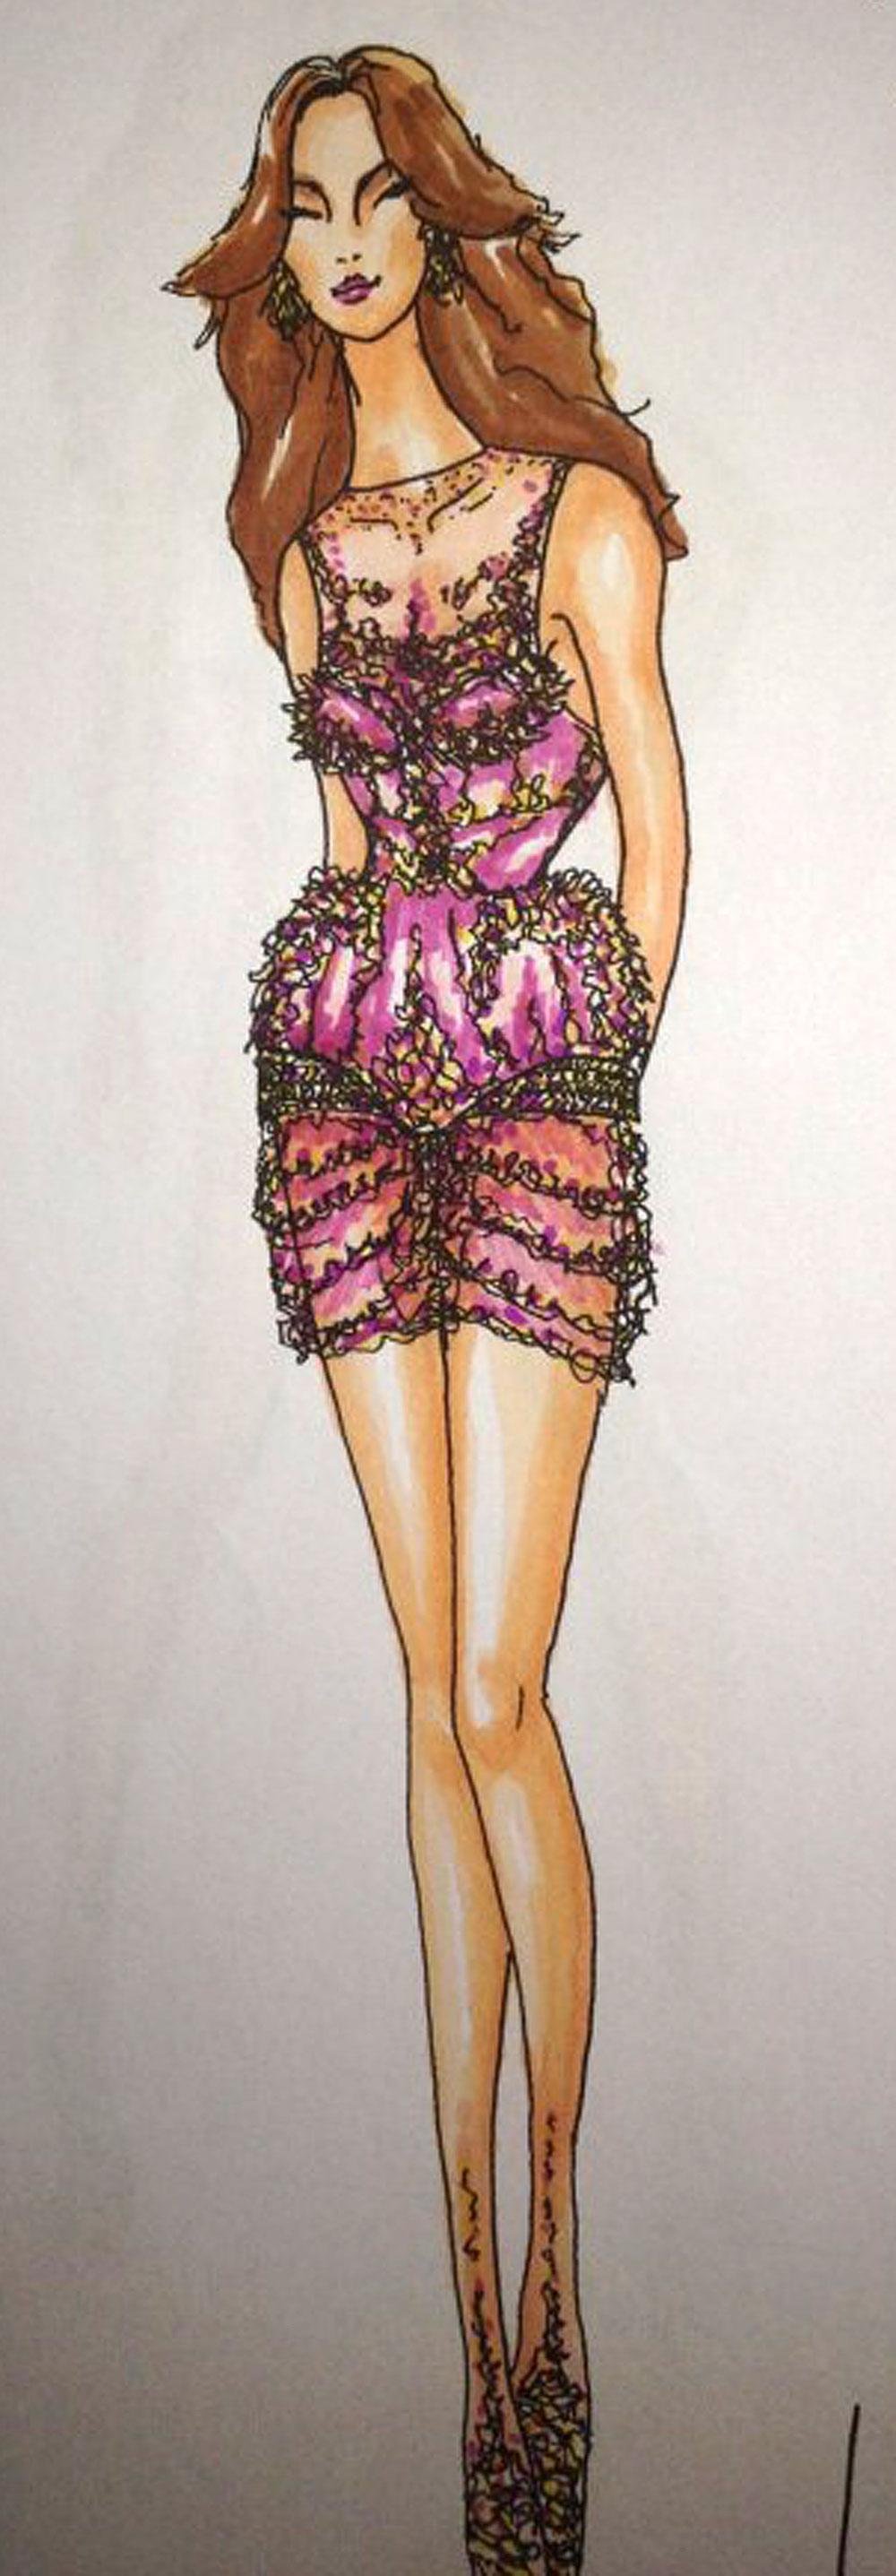 Perrelli kommer att vara klädd i en blingad klänning (bilden på skissen – hämtad från blogg.damernasvarld.se/charlotteperrelli).